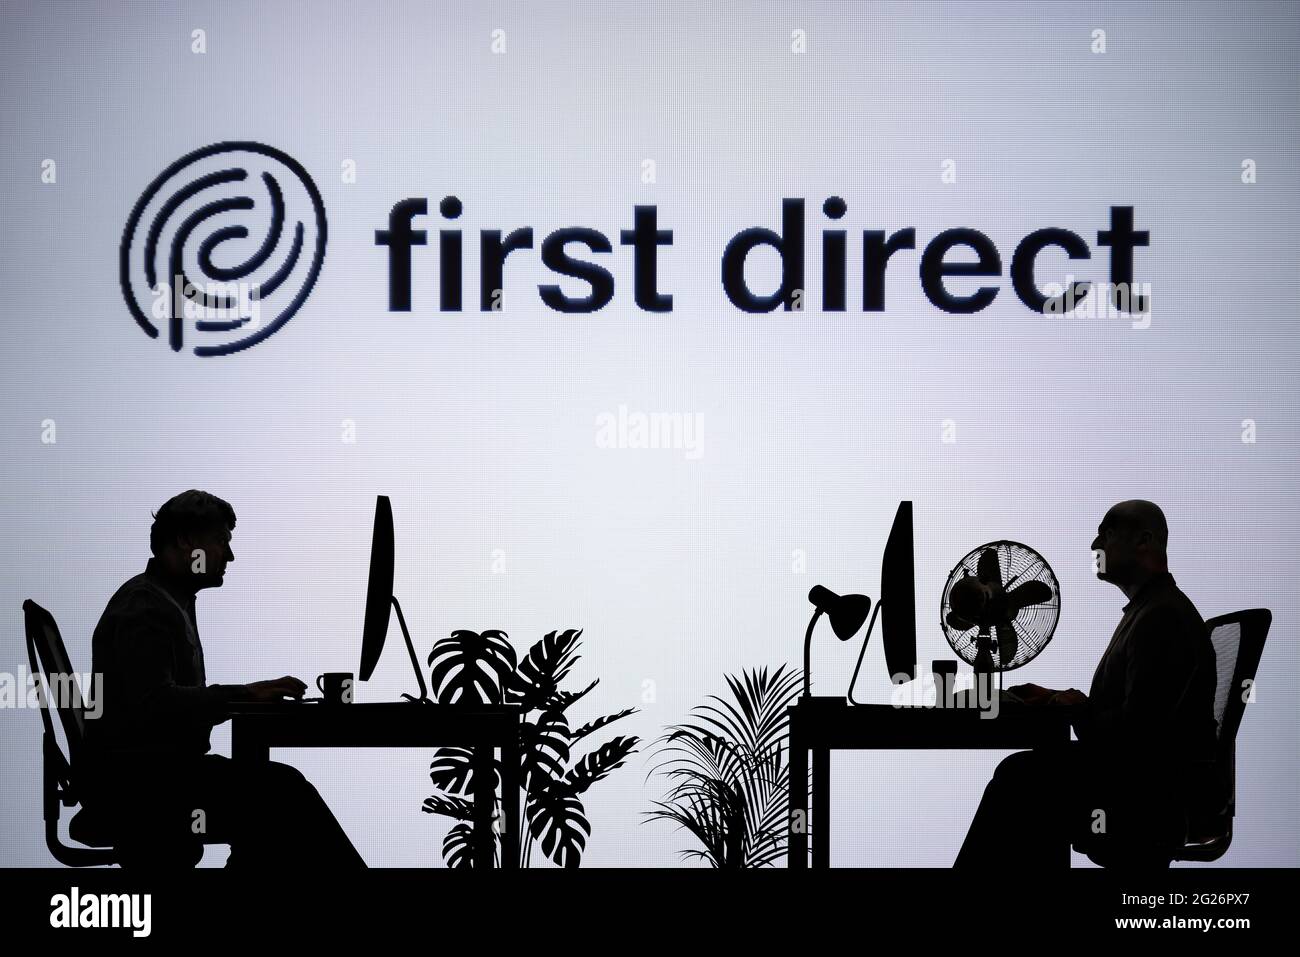 El primer logotipo Direct se muestra en una pantalla LED en segundo plano, mientras que dos personas con siluetas trabajan en un entorno de oficina (sólo para uso editorial) Foto de stock